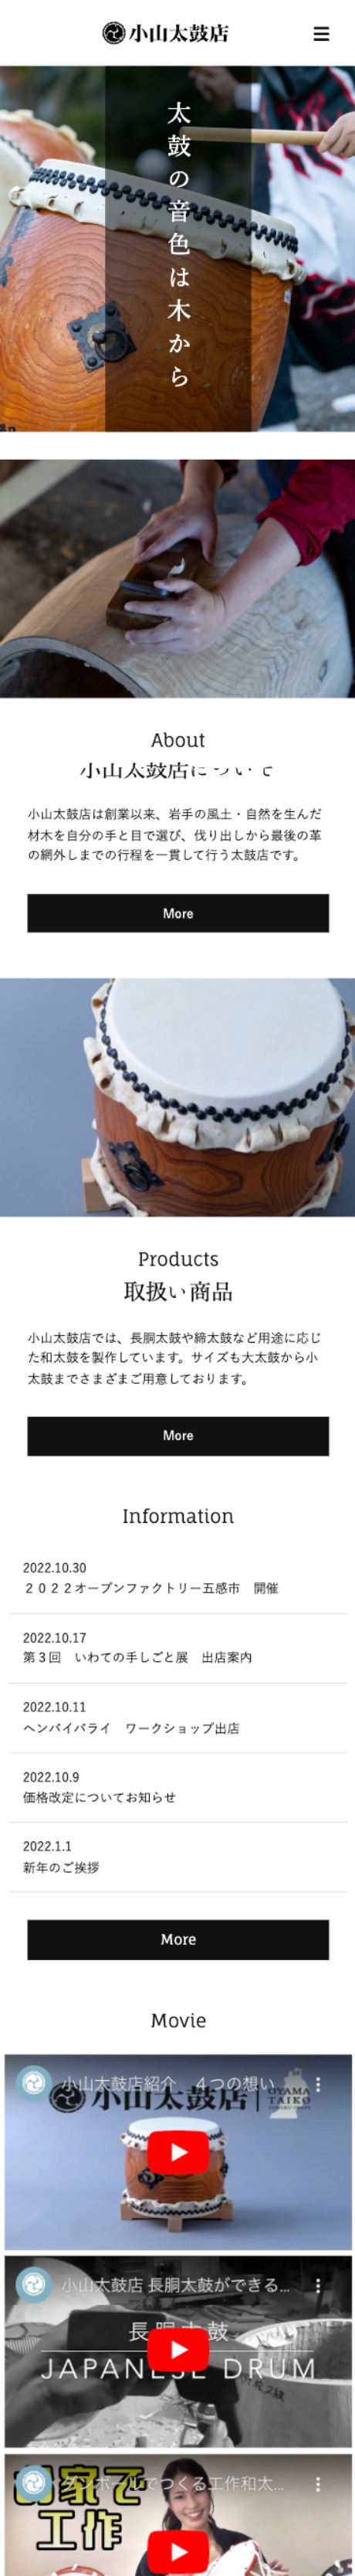 小山太鼓店のスマホWebサイトデザイン画像